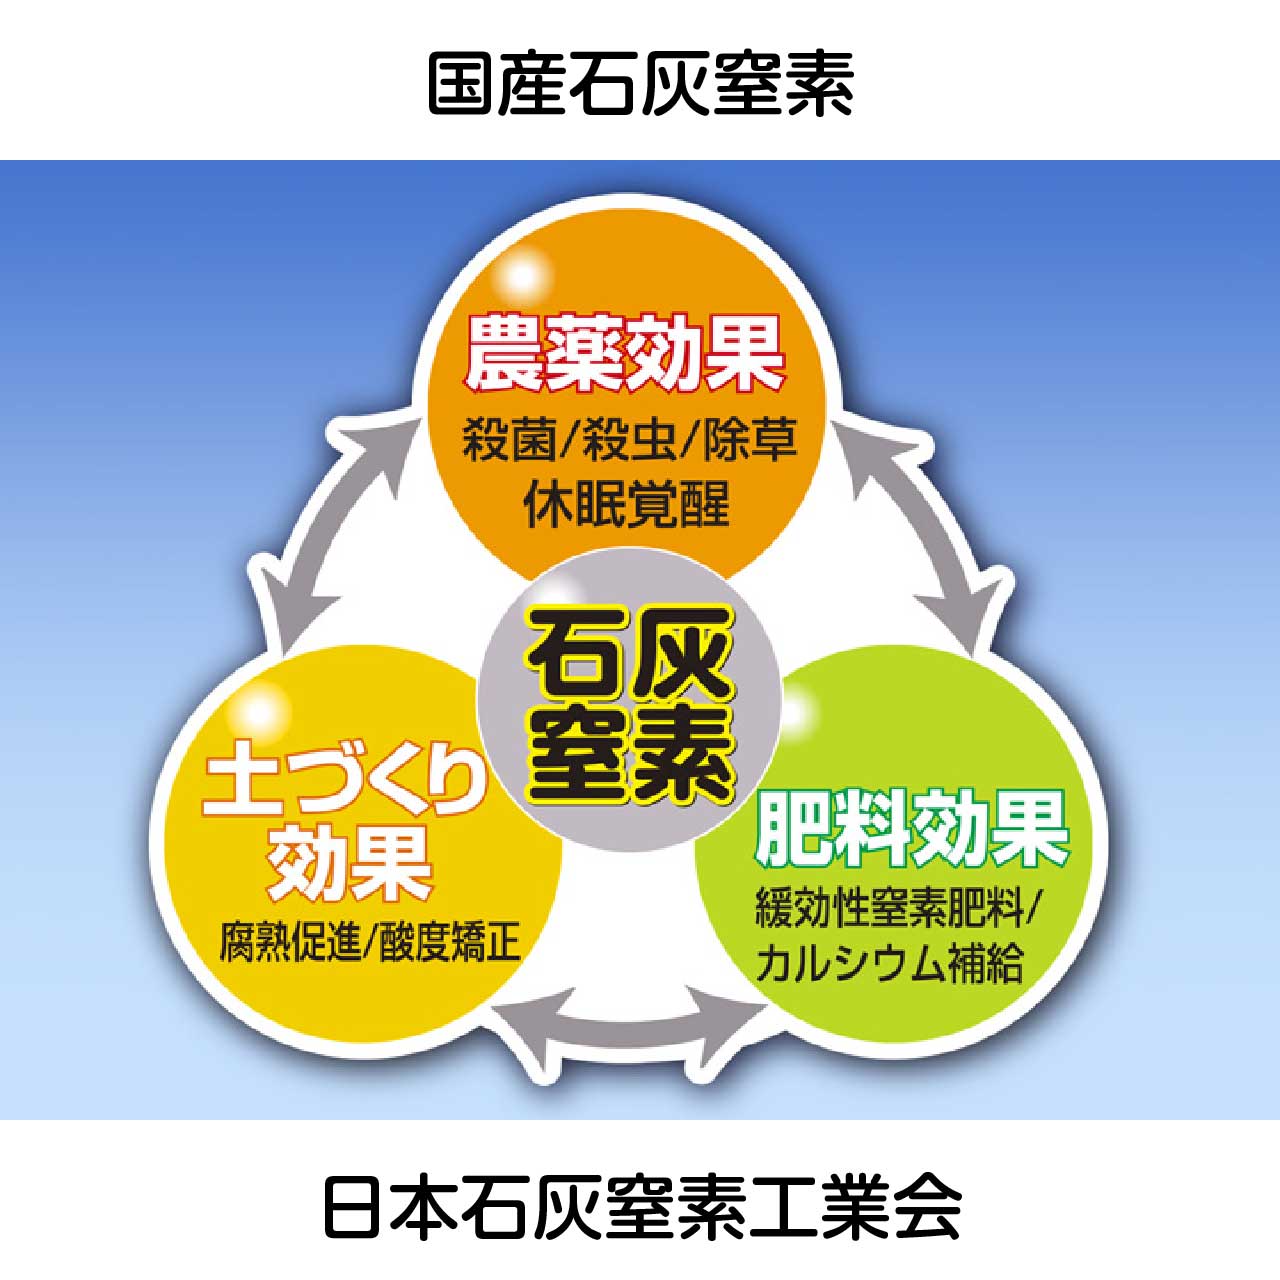 広告：日本石灰窒素工業会／国産石灰窒素